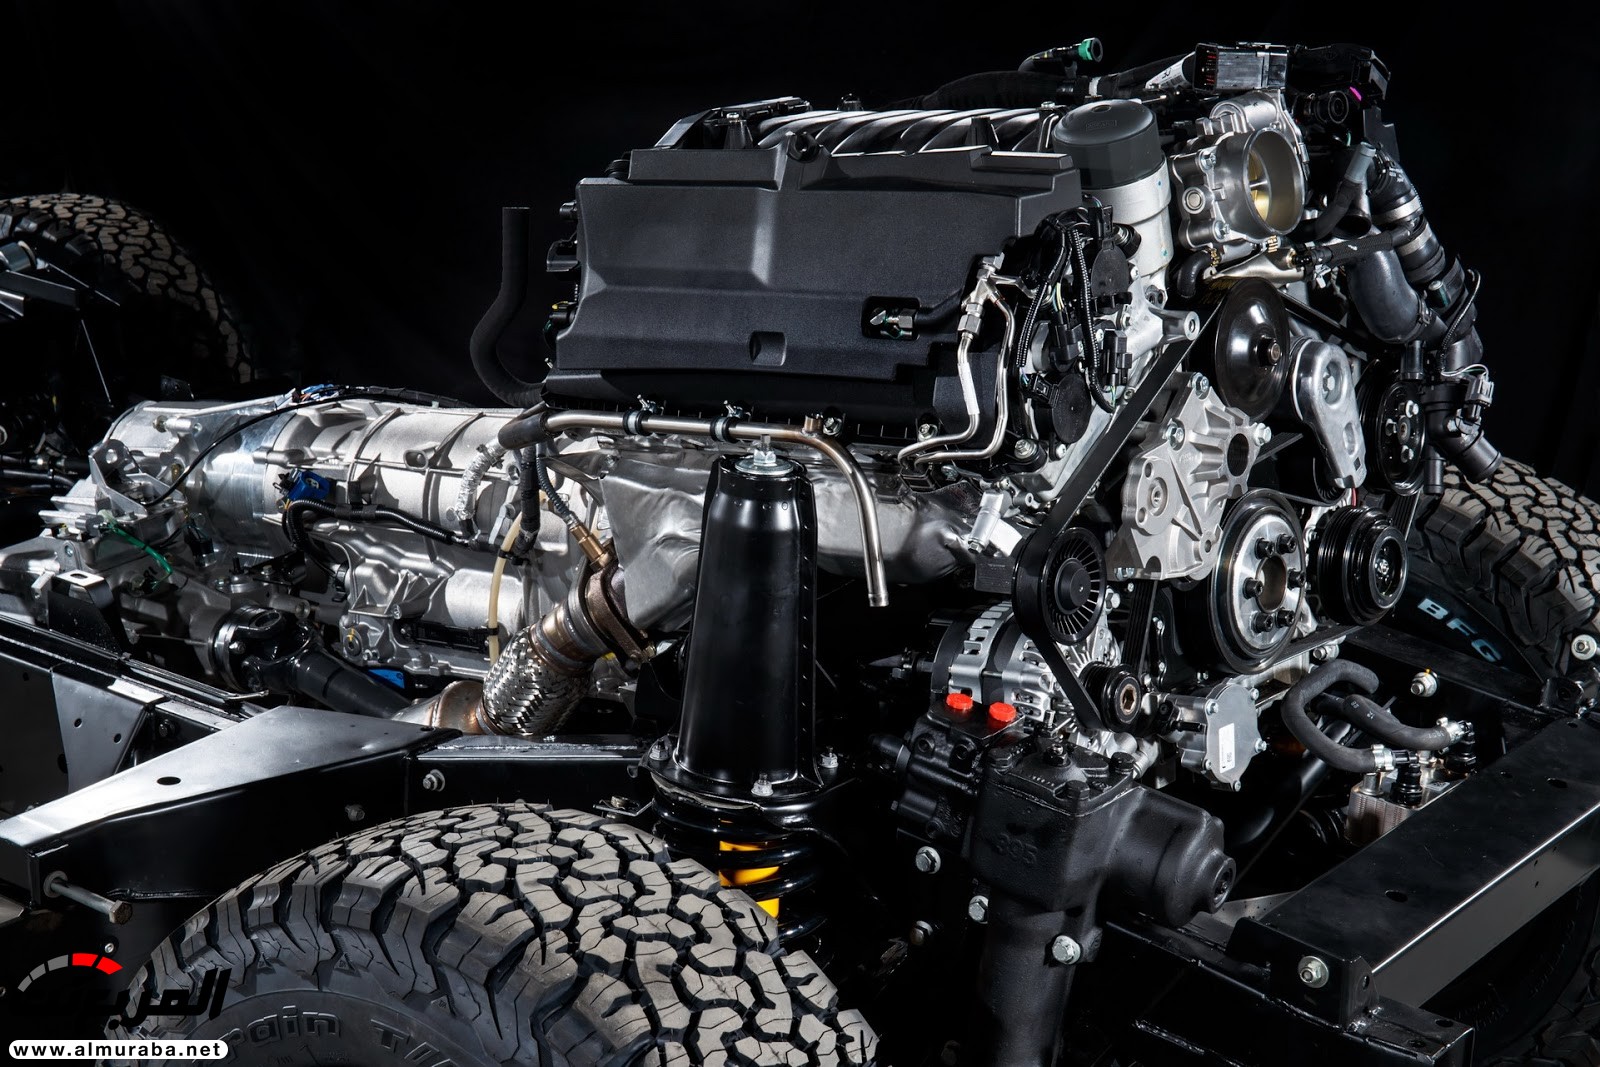 لاند روفر ديفندر تعود رسمياً بإصدار خاص بمحرك V8 بقوة 400 حصان 22